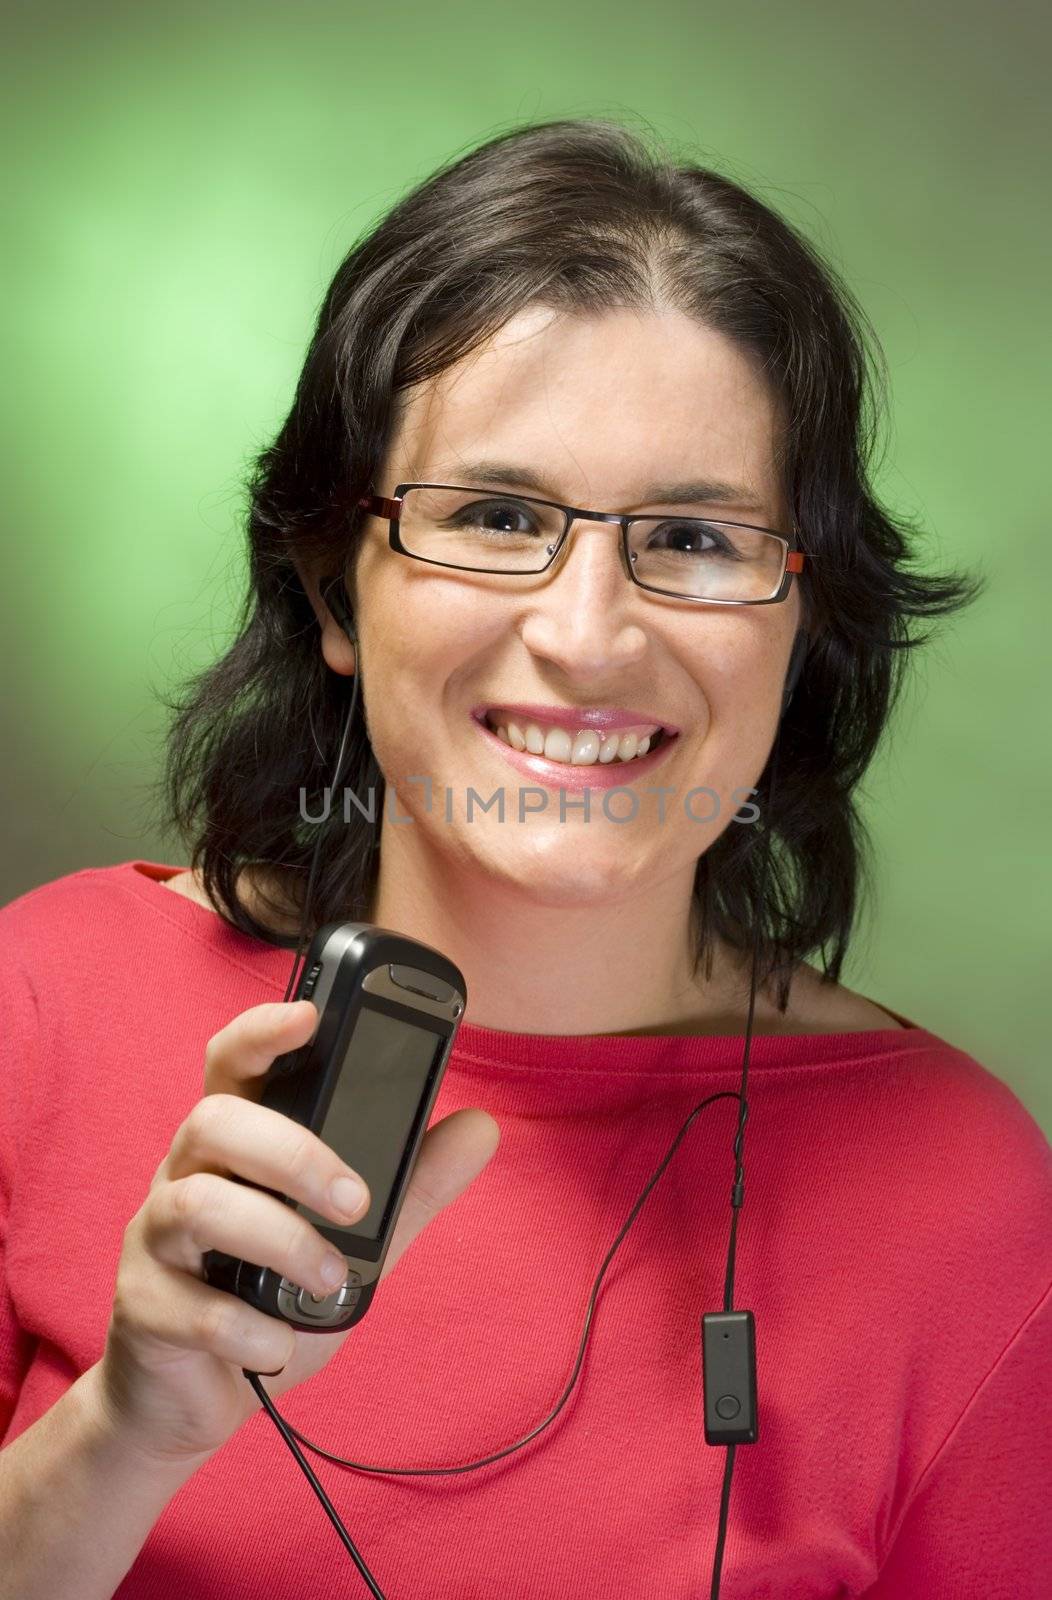 young woman communication technology by Trebuchet